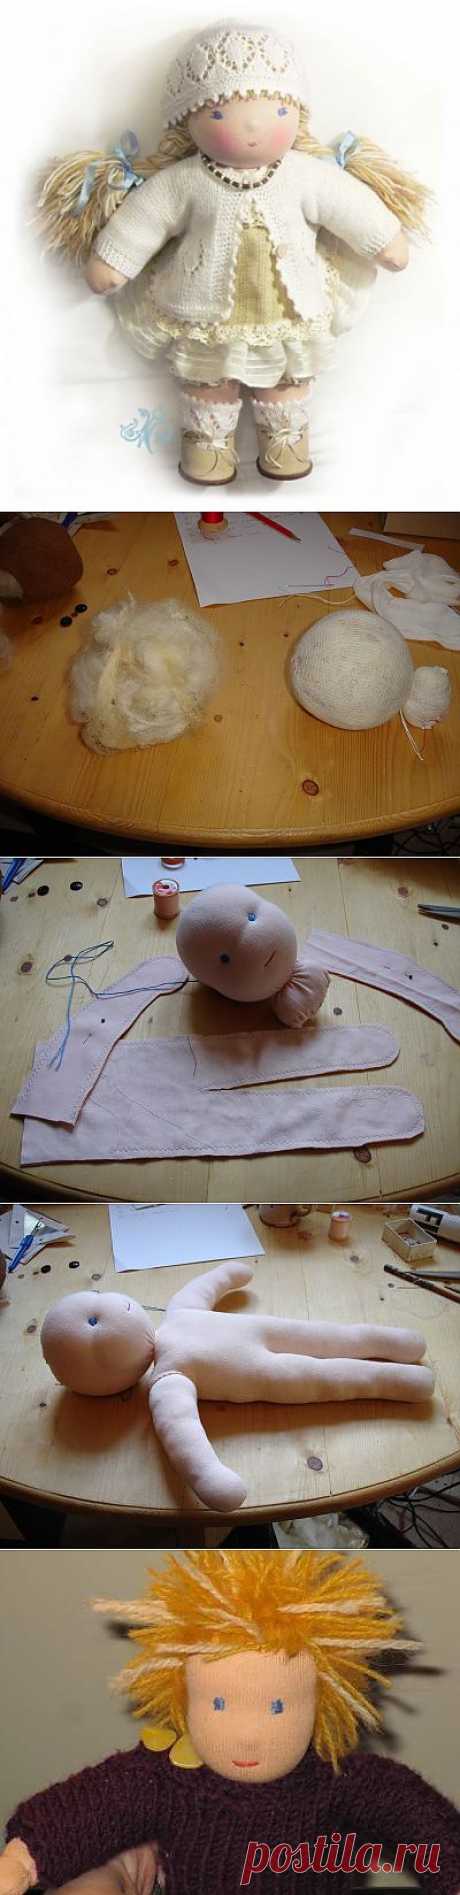 Пример создание вальдорфской куклы / Вальдорфская кукла / PassionForum - мастер-классы по рукоделию